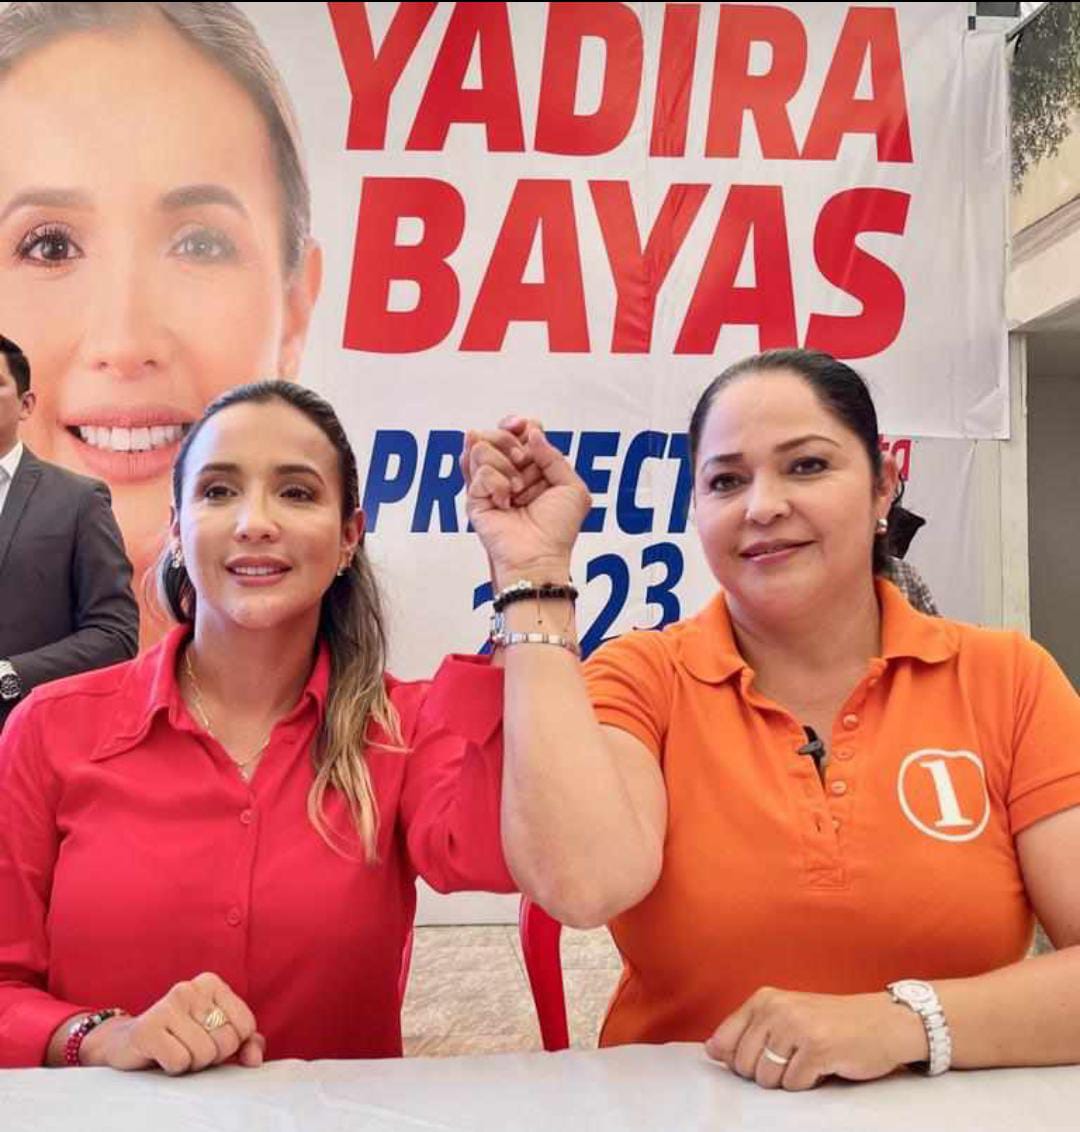 ACUERDO. Yadira Bayas apoya la candidatura de Verónica Zurita.